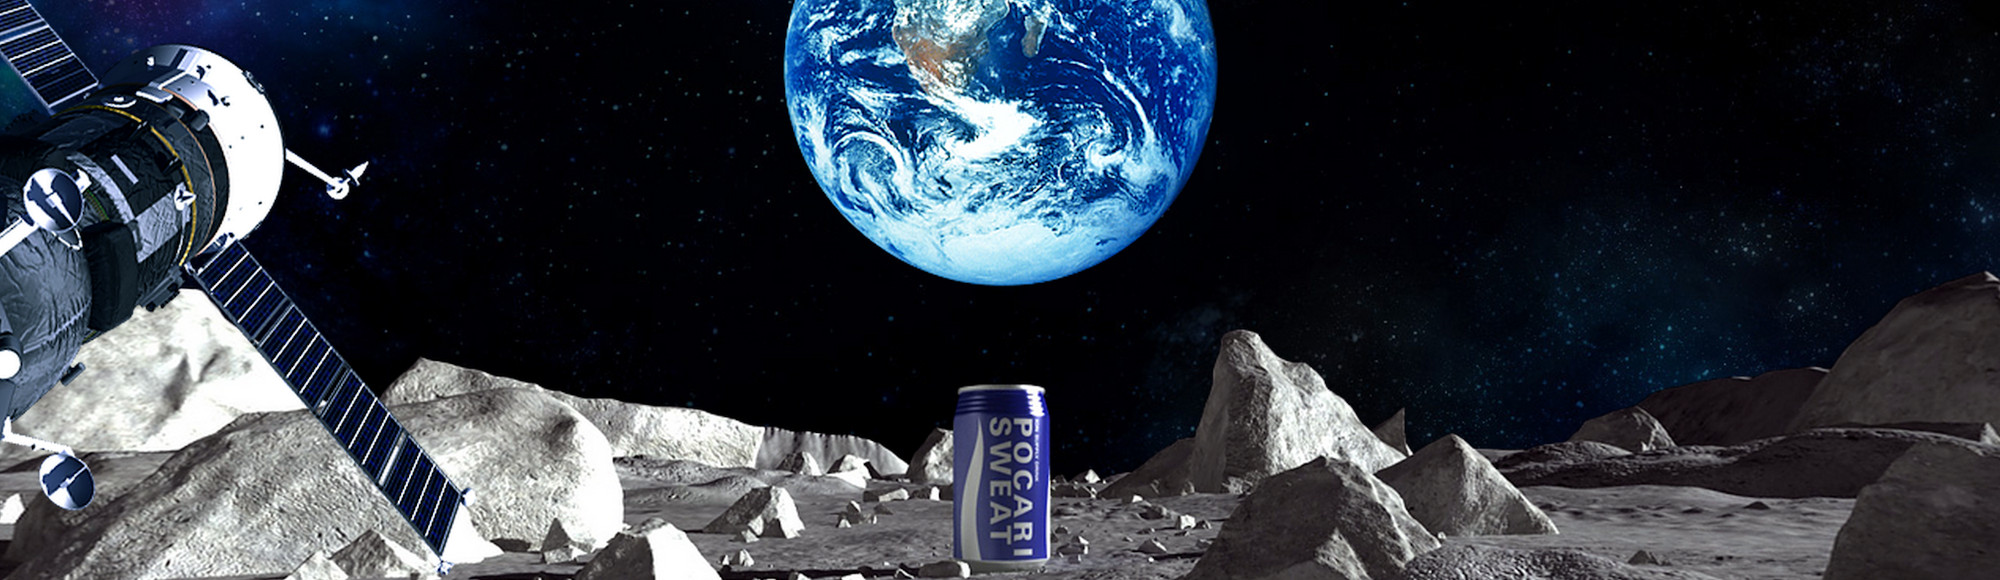 A Japanese Soda Company's Ad on the Moon